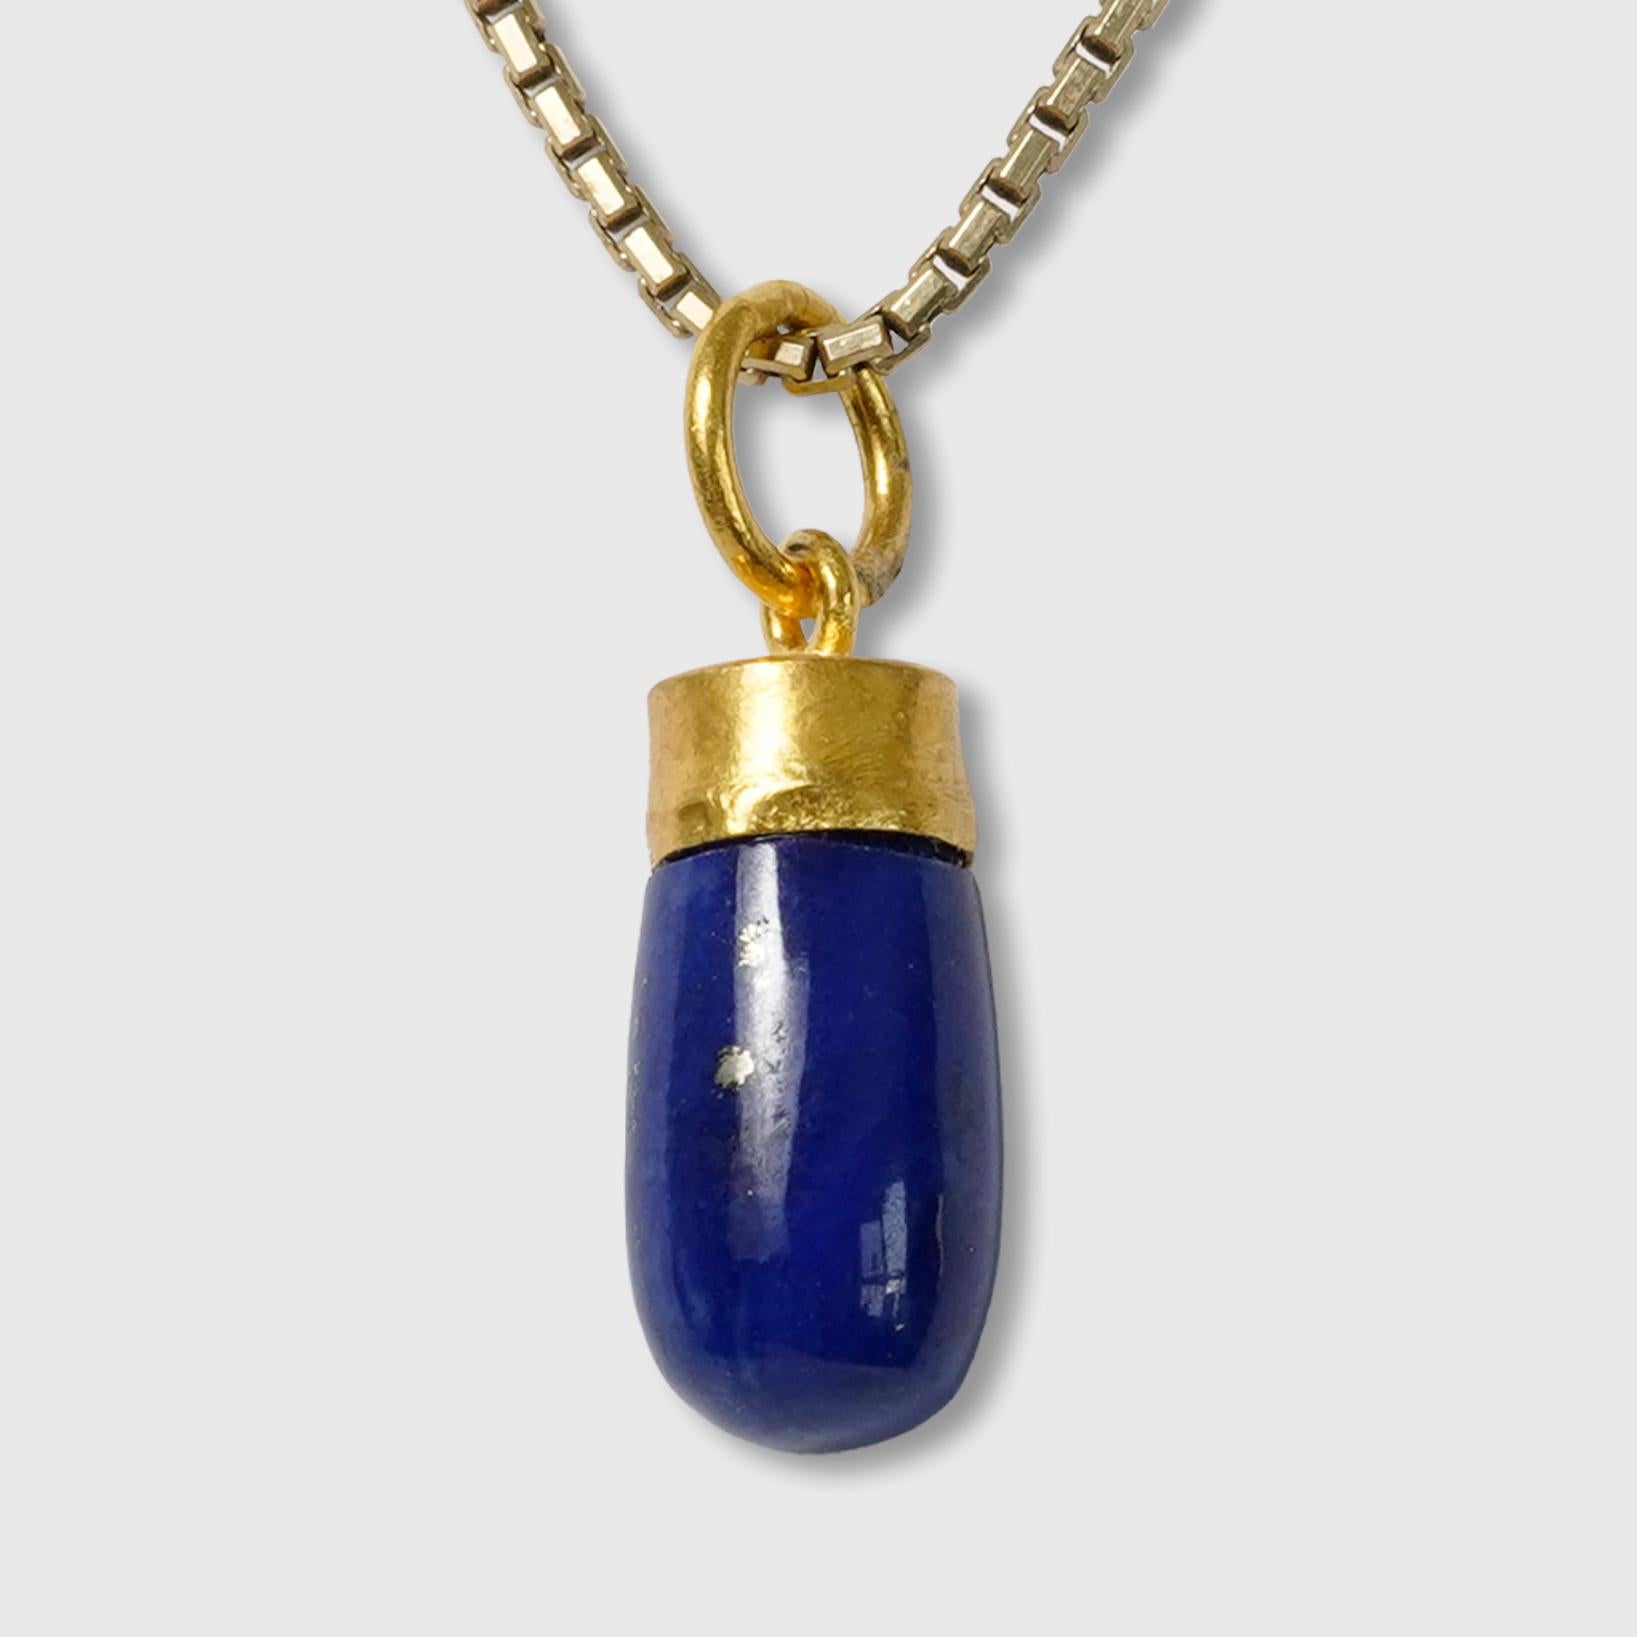 Collier à breloques en or jaune 24kt 7.00ct Lapis Lazuli Drop Charm Necklace

Lapis - 7.00 ct
Or 24kt 995 - 0,80 grammes
Argent 925 - 0,80 grammes

L'HISTOIRE : 

Le lapis-lazuli de qualité supérieure provient d'Afghanistan, où il est exploité